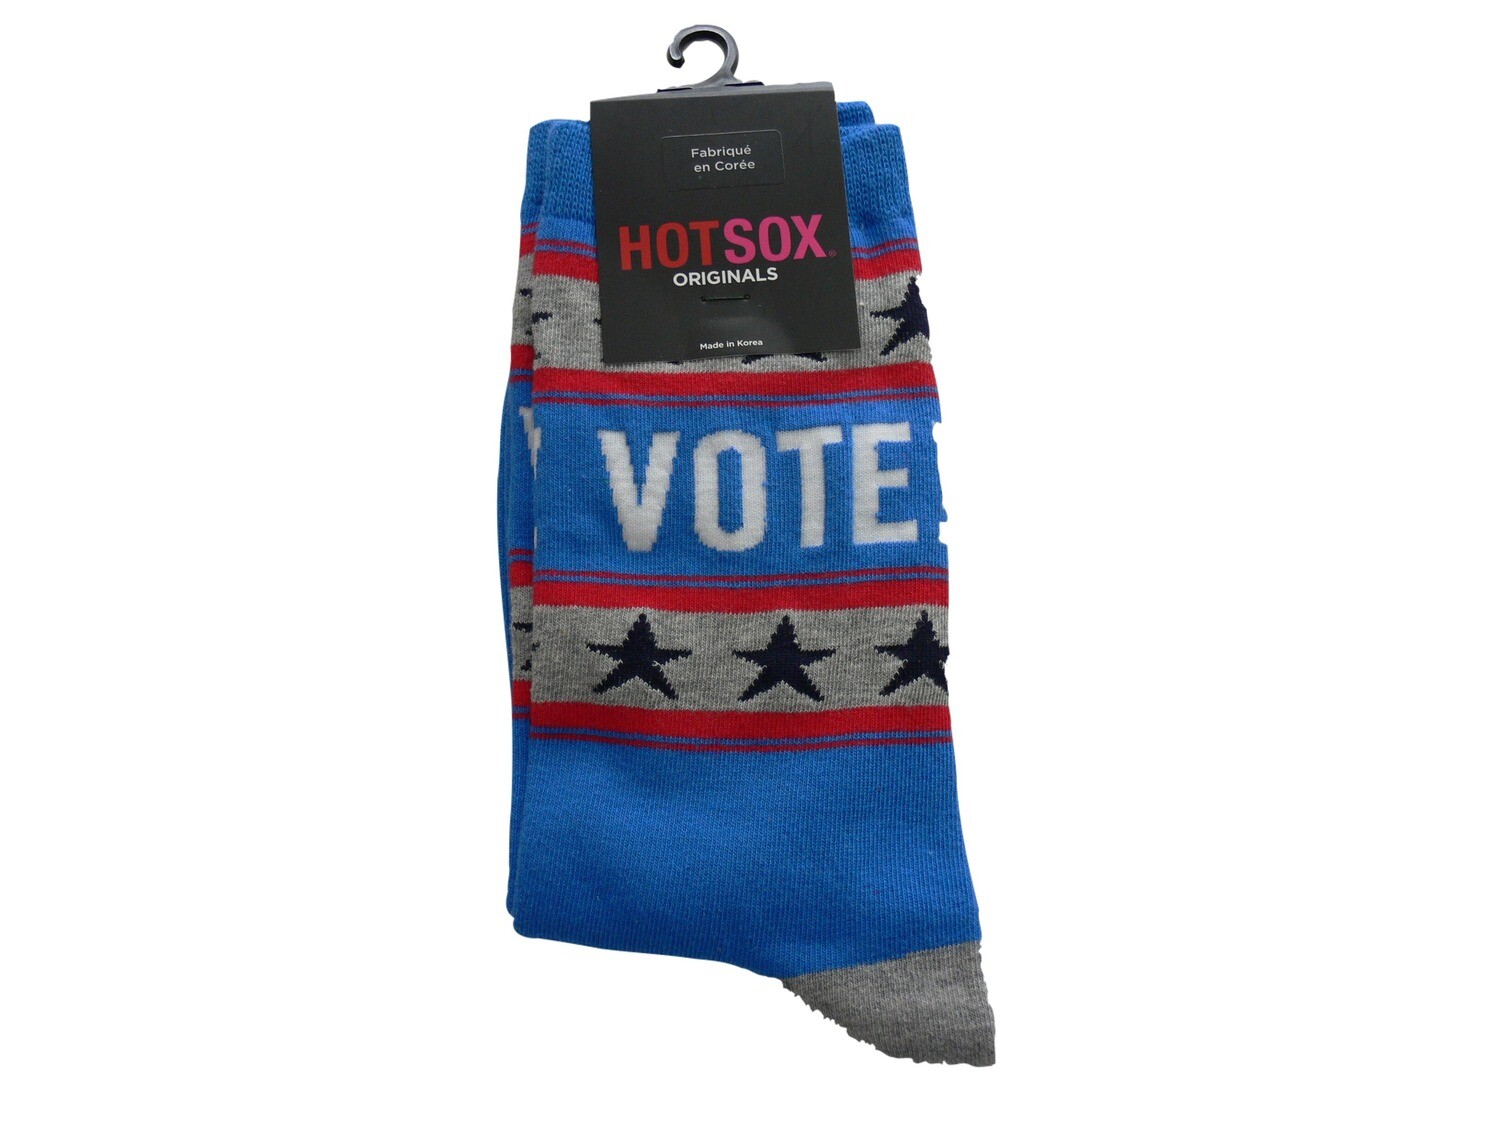 Vote! Crew Socks